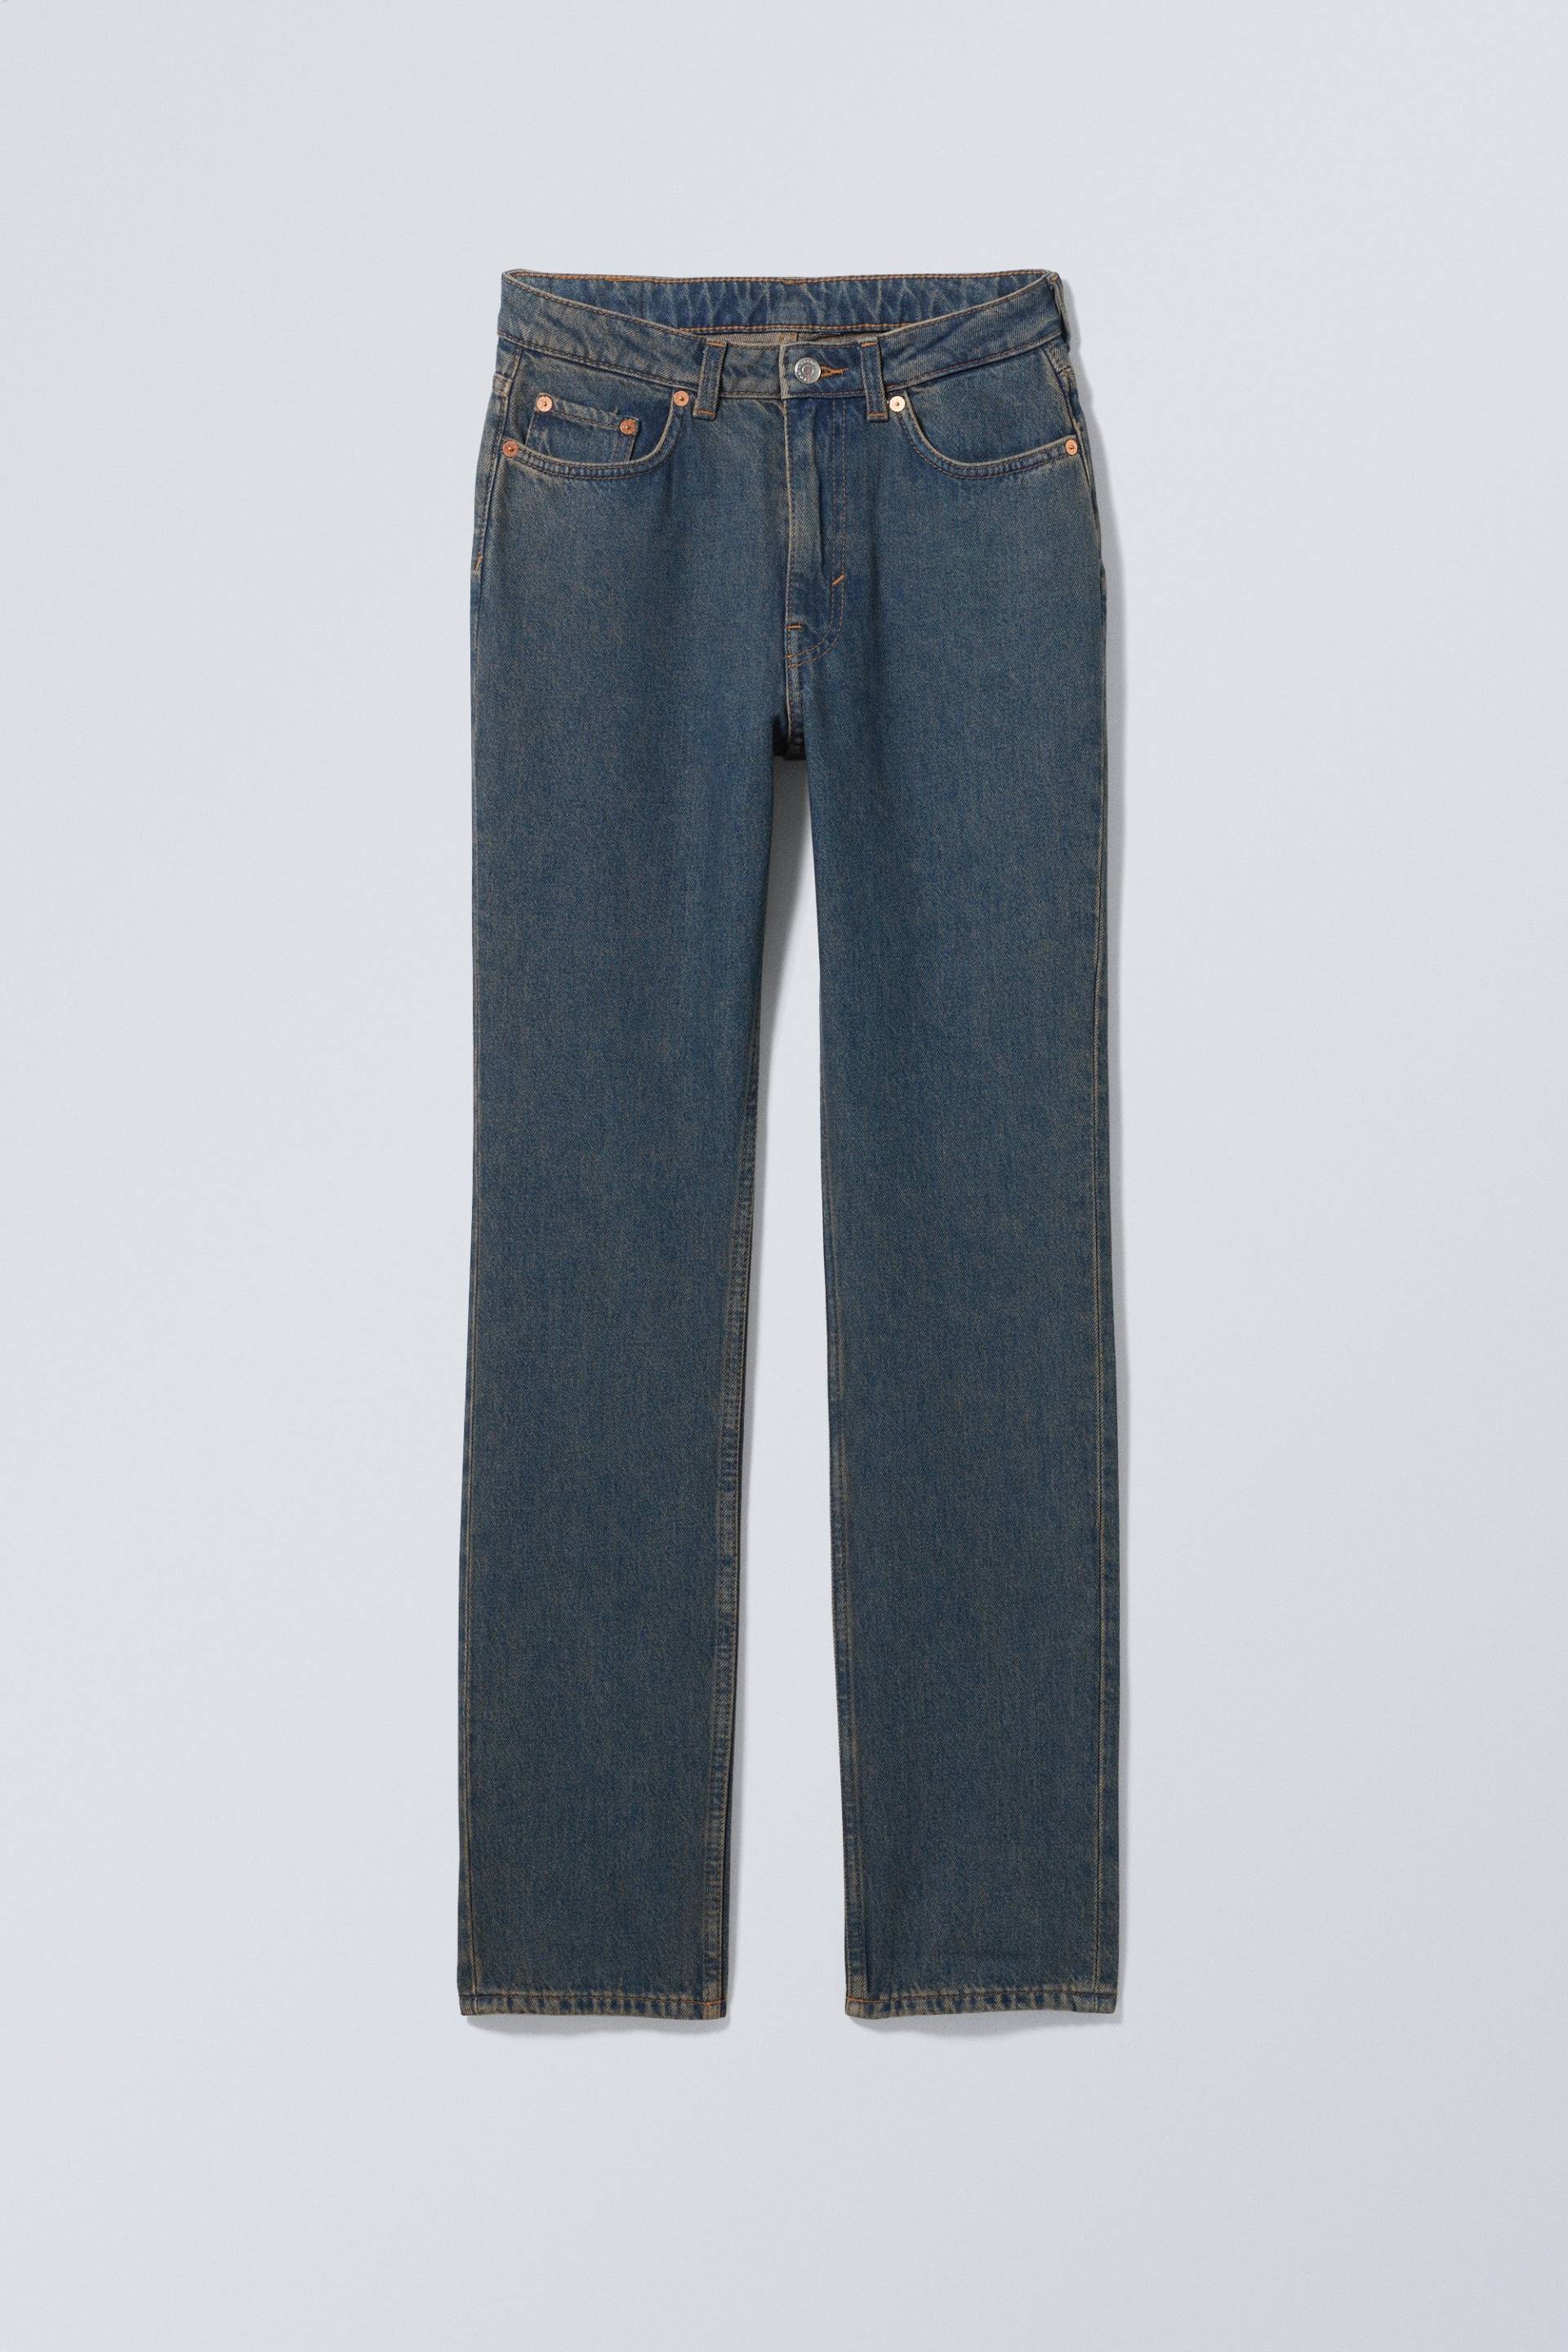 Weekday Schmale Jeans City mit hohem Bund Lapisblau, Skinny in Größe 29/32. Farbe: Lapis blue von Weekday